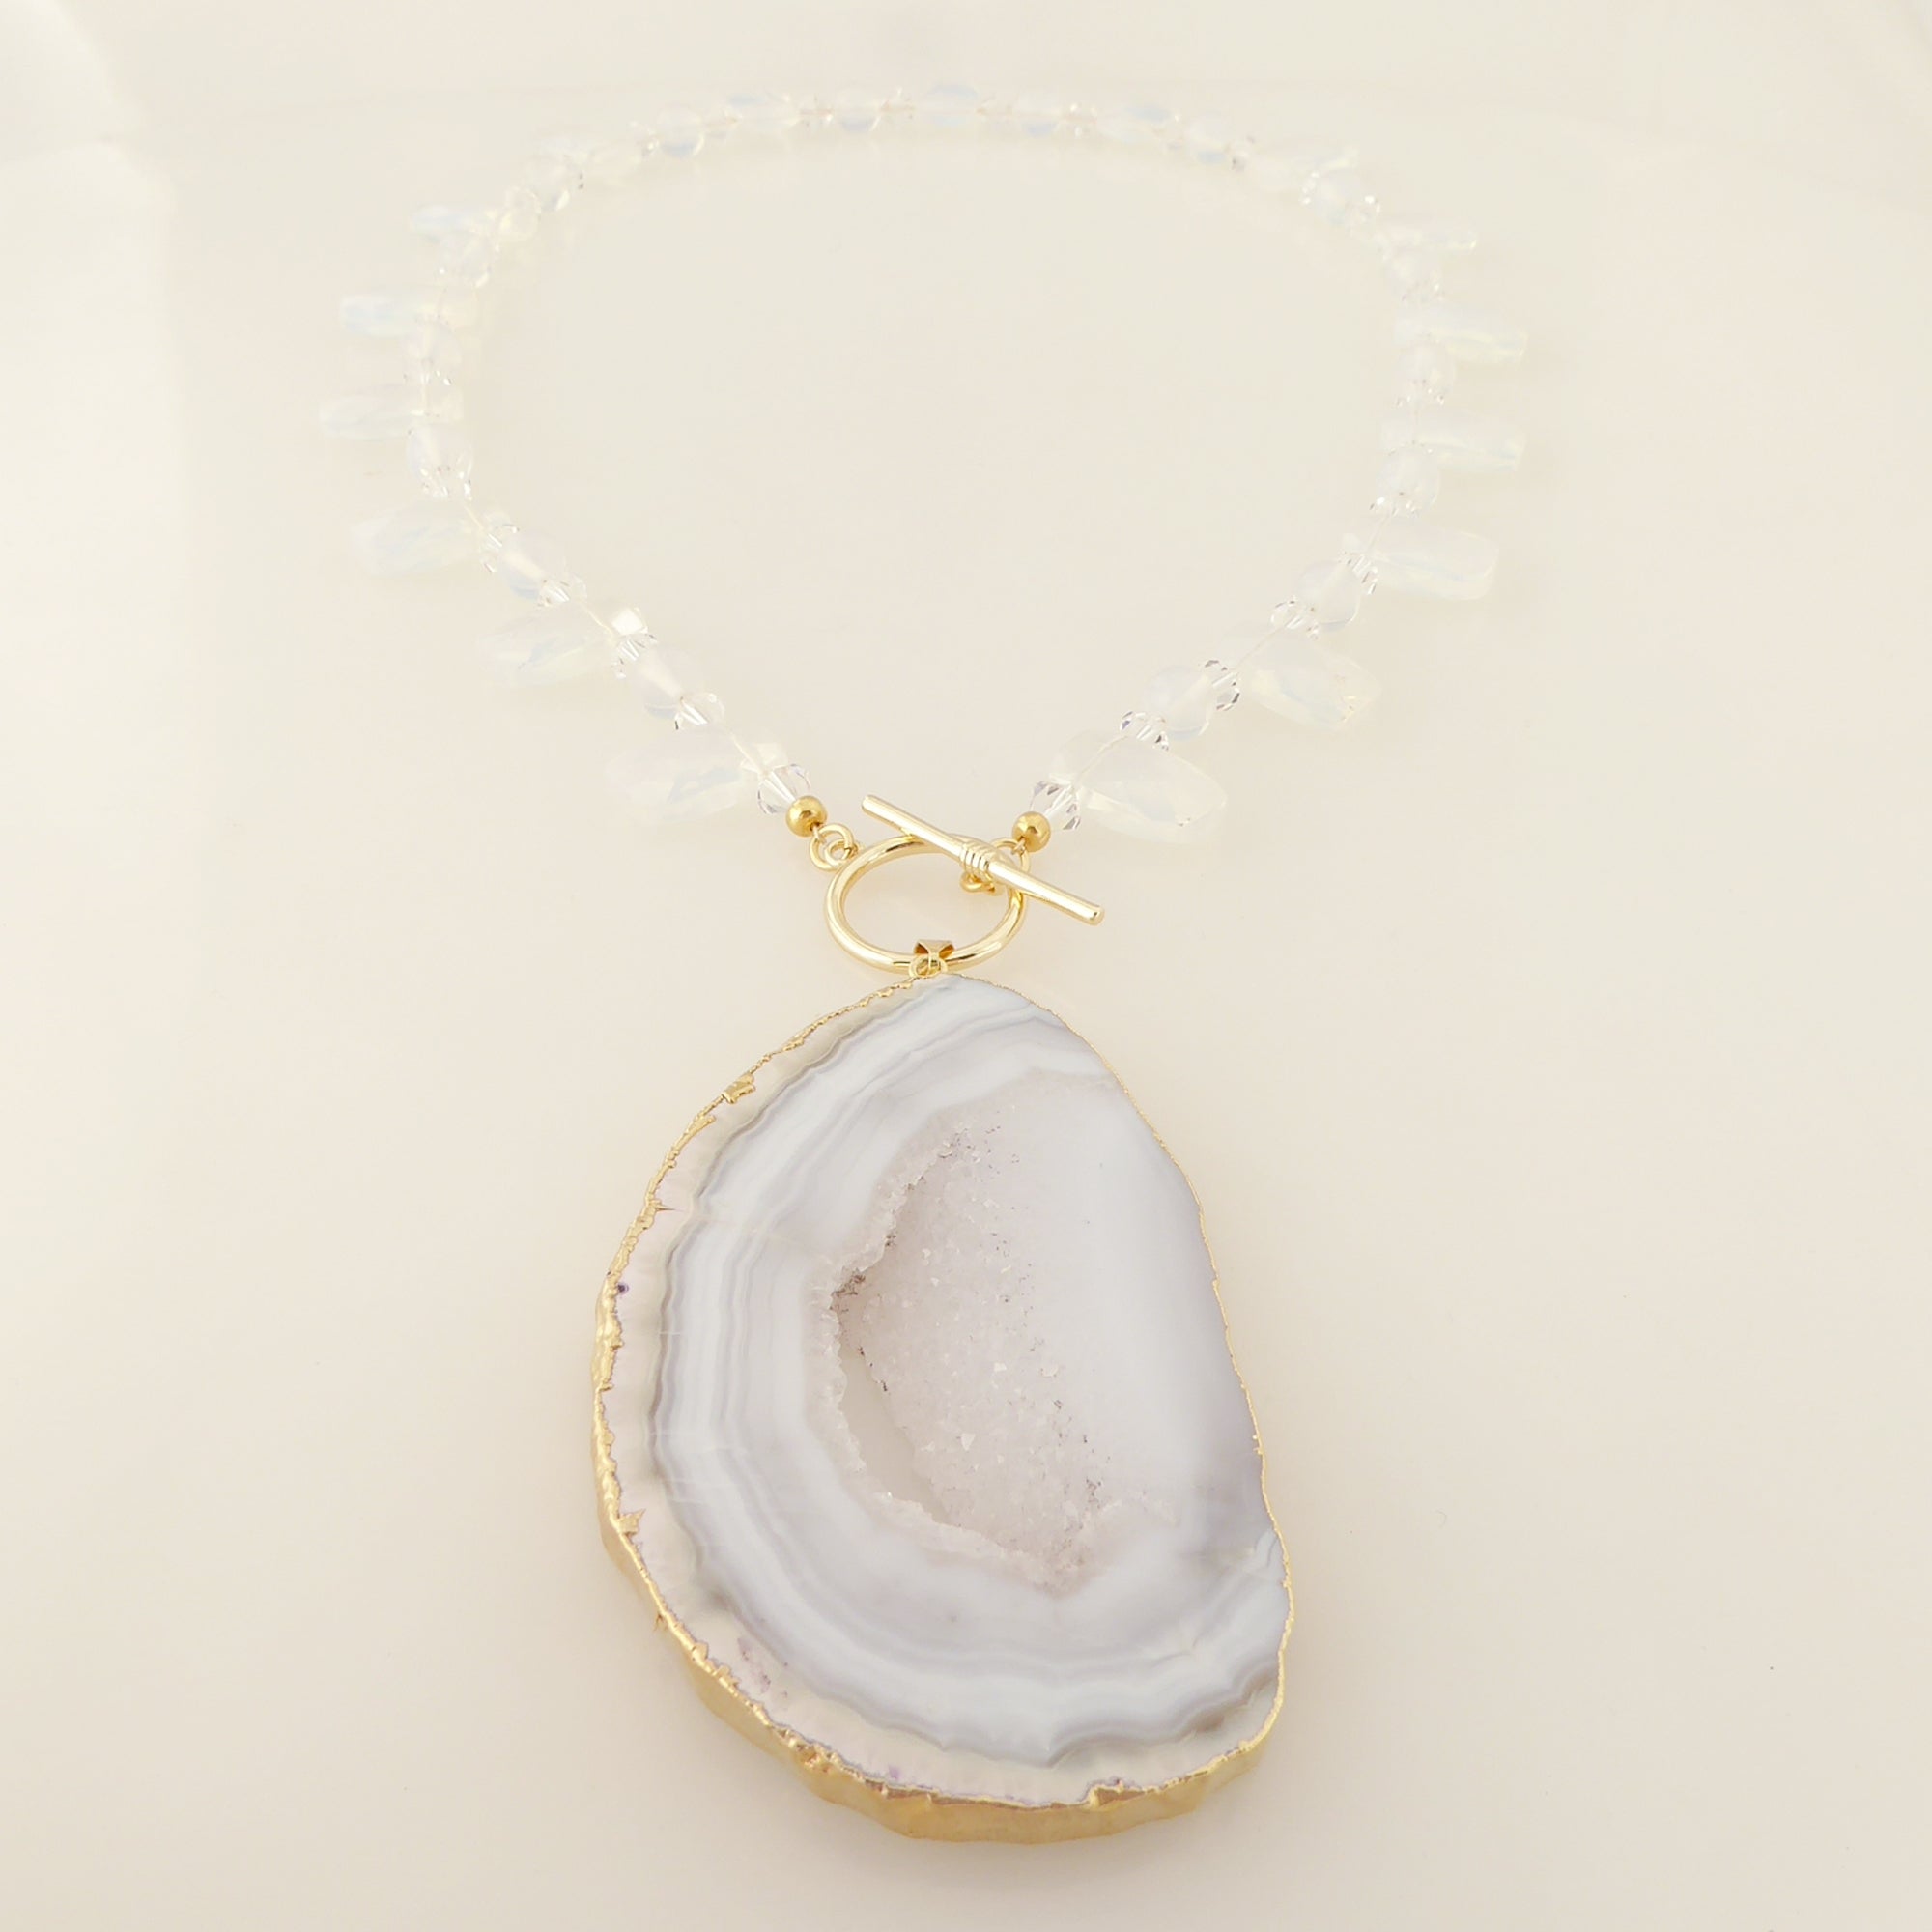    Dove gray agate slice necklace by Jenny Dayco 3